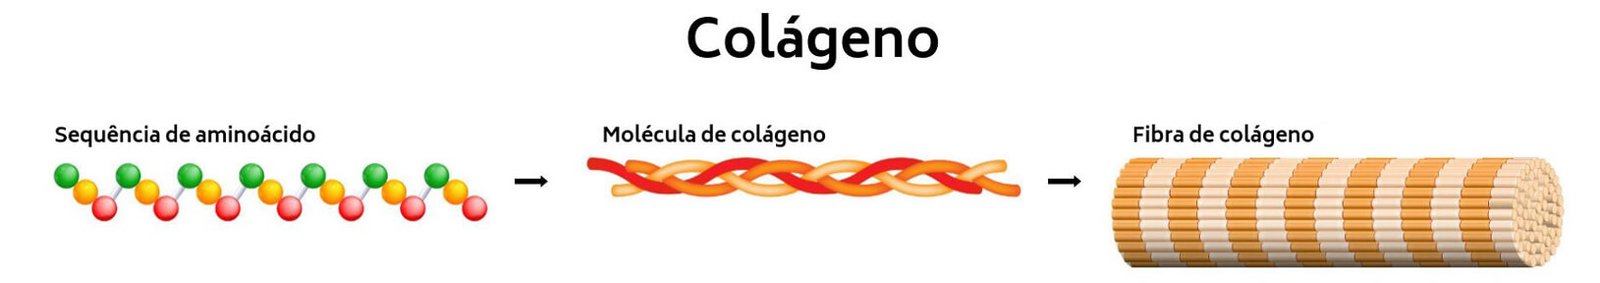 Colageno